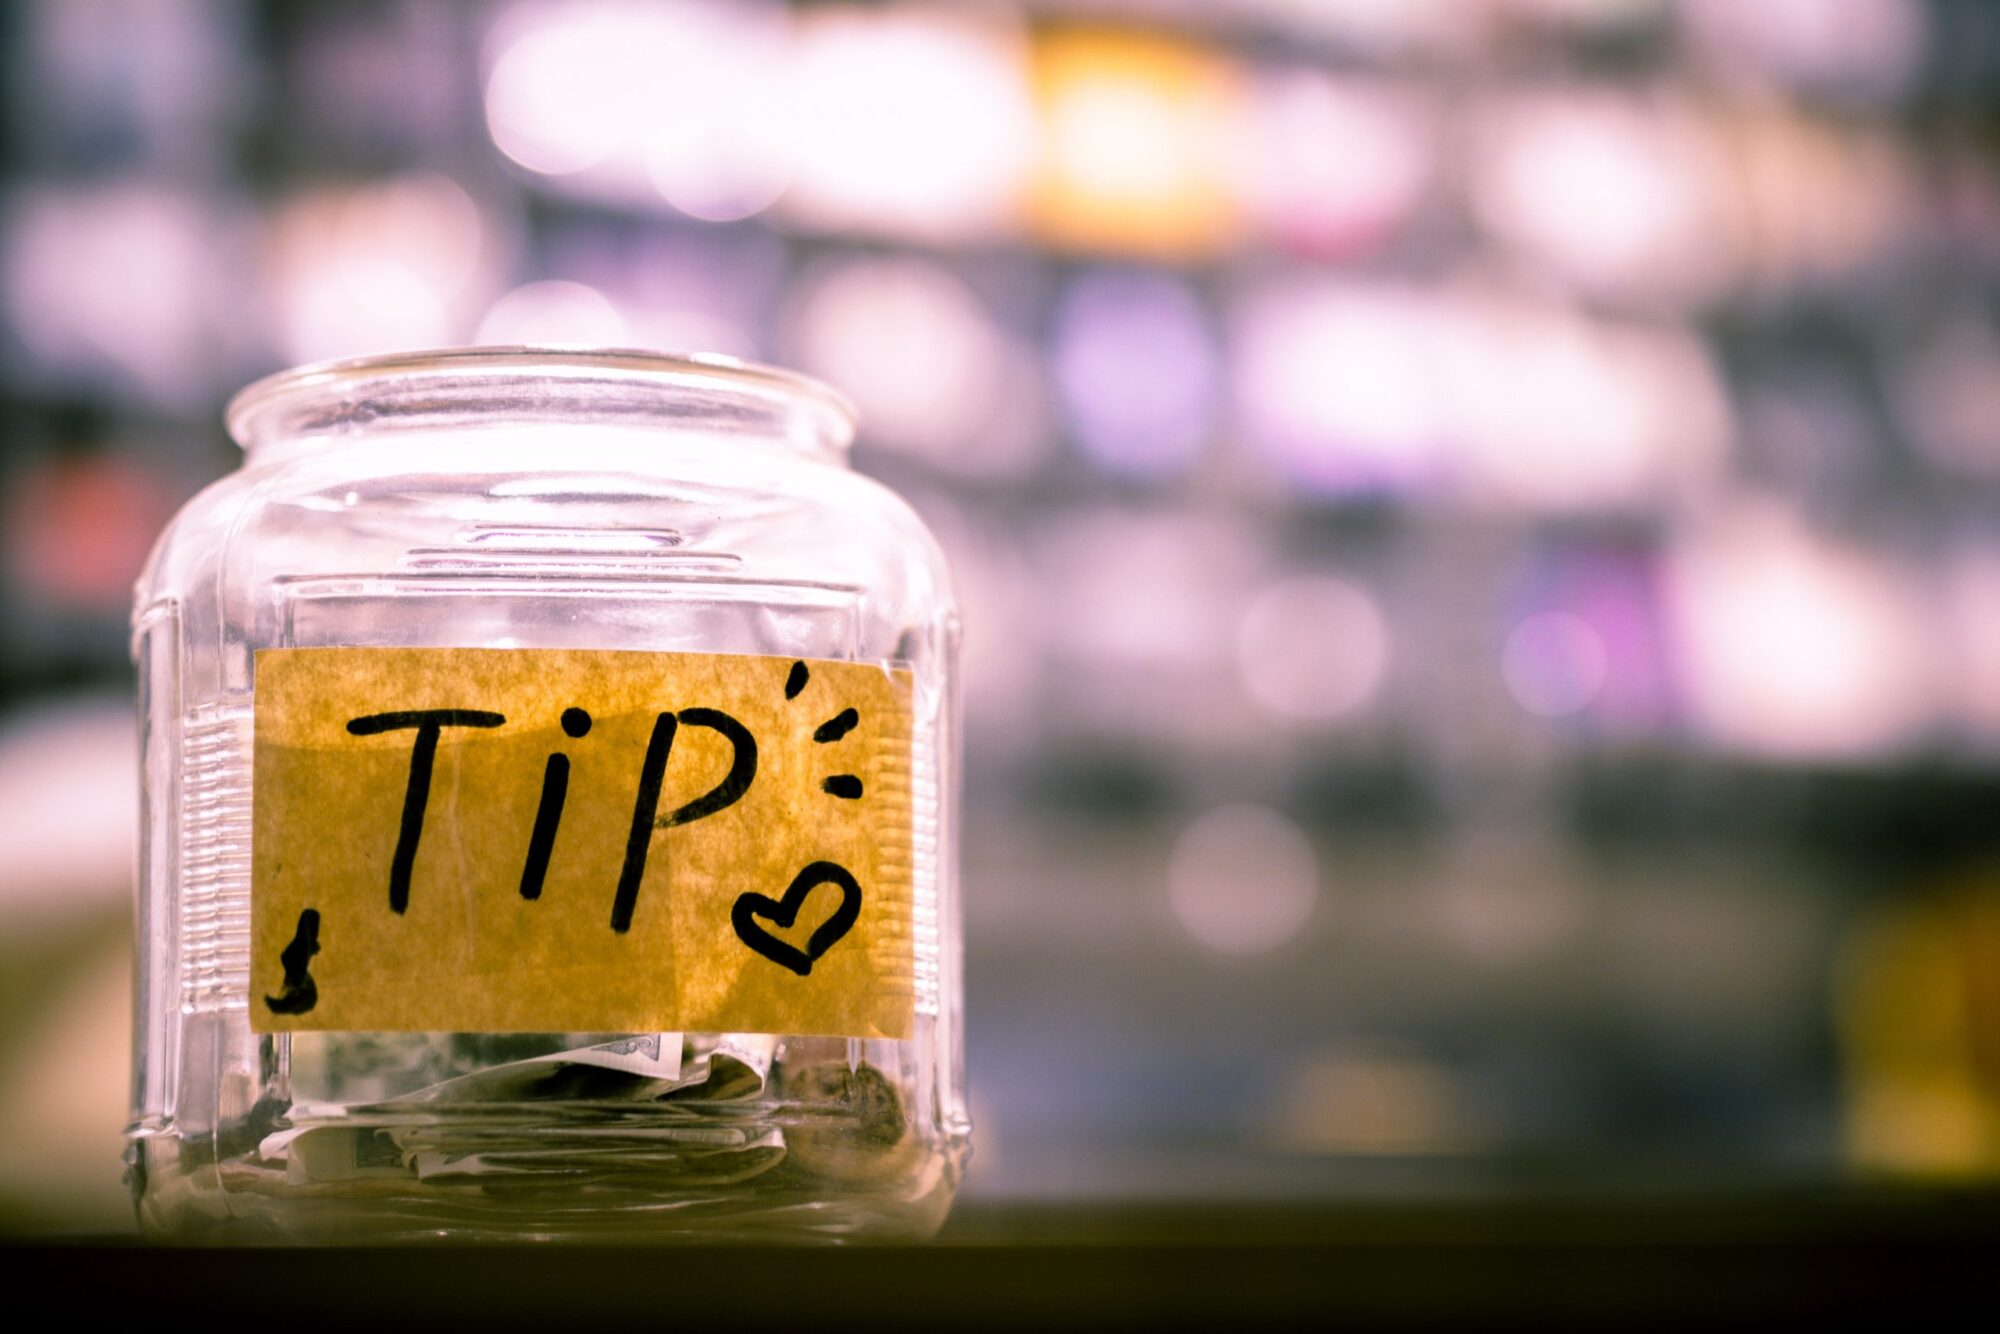 Image of tip jar in a shop